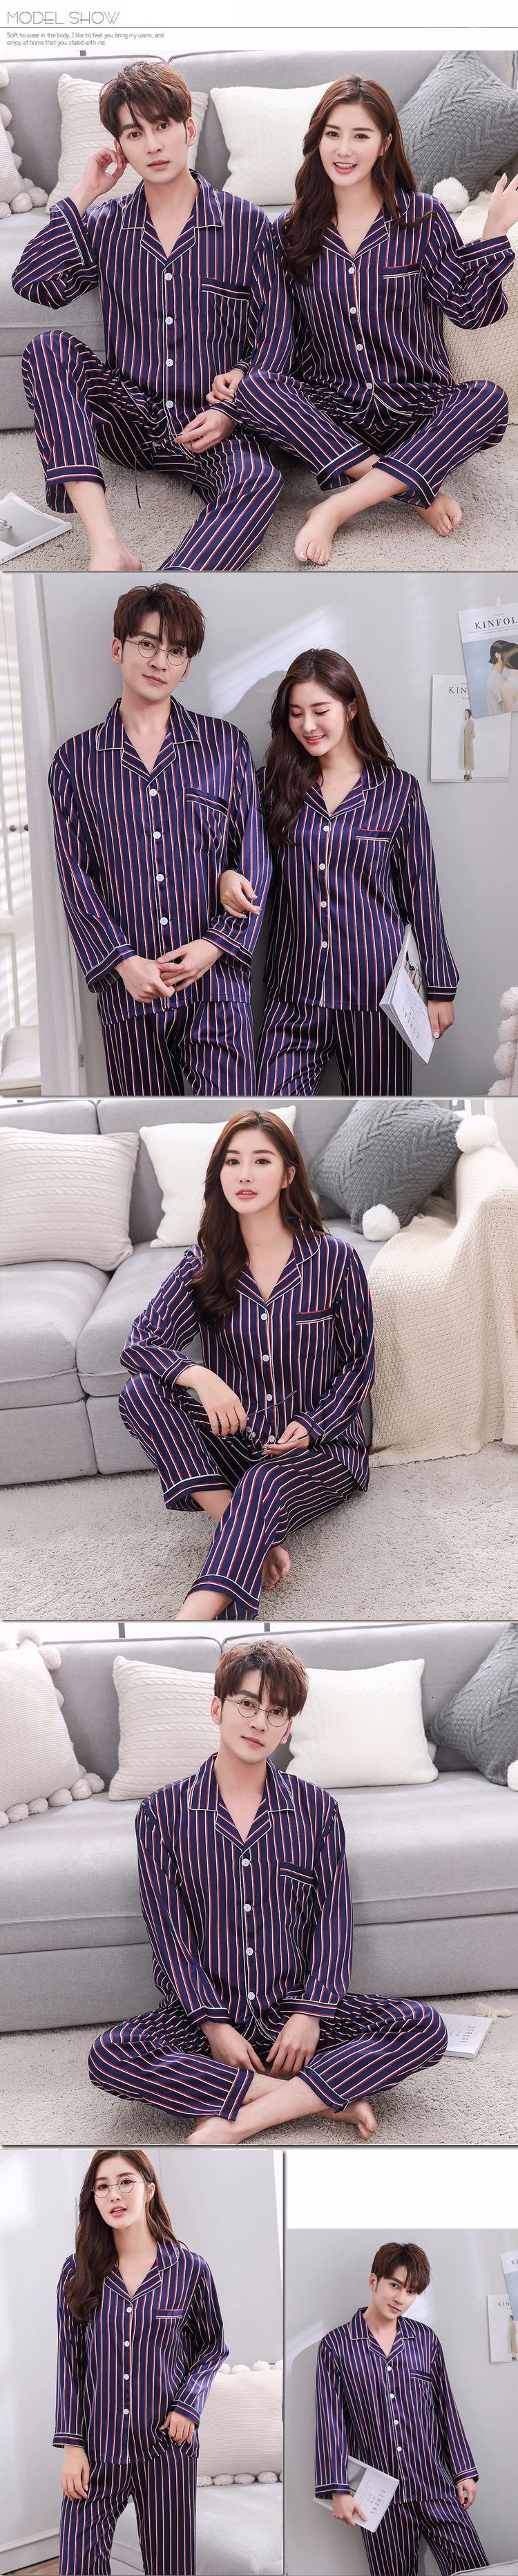 Парная Шелковая пижама комплекты атласная пижама полосатая Пижама домашний костюм пижама для влюбленных мужчин и женщин Одежда для влюбленных